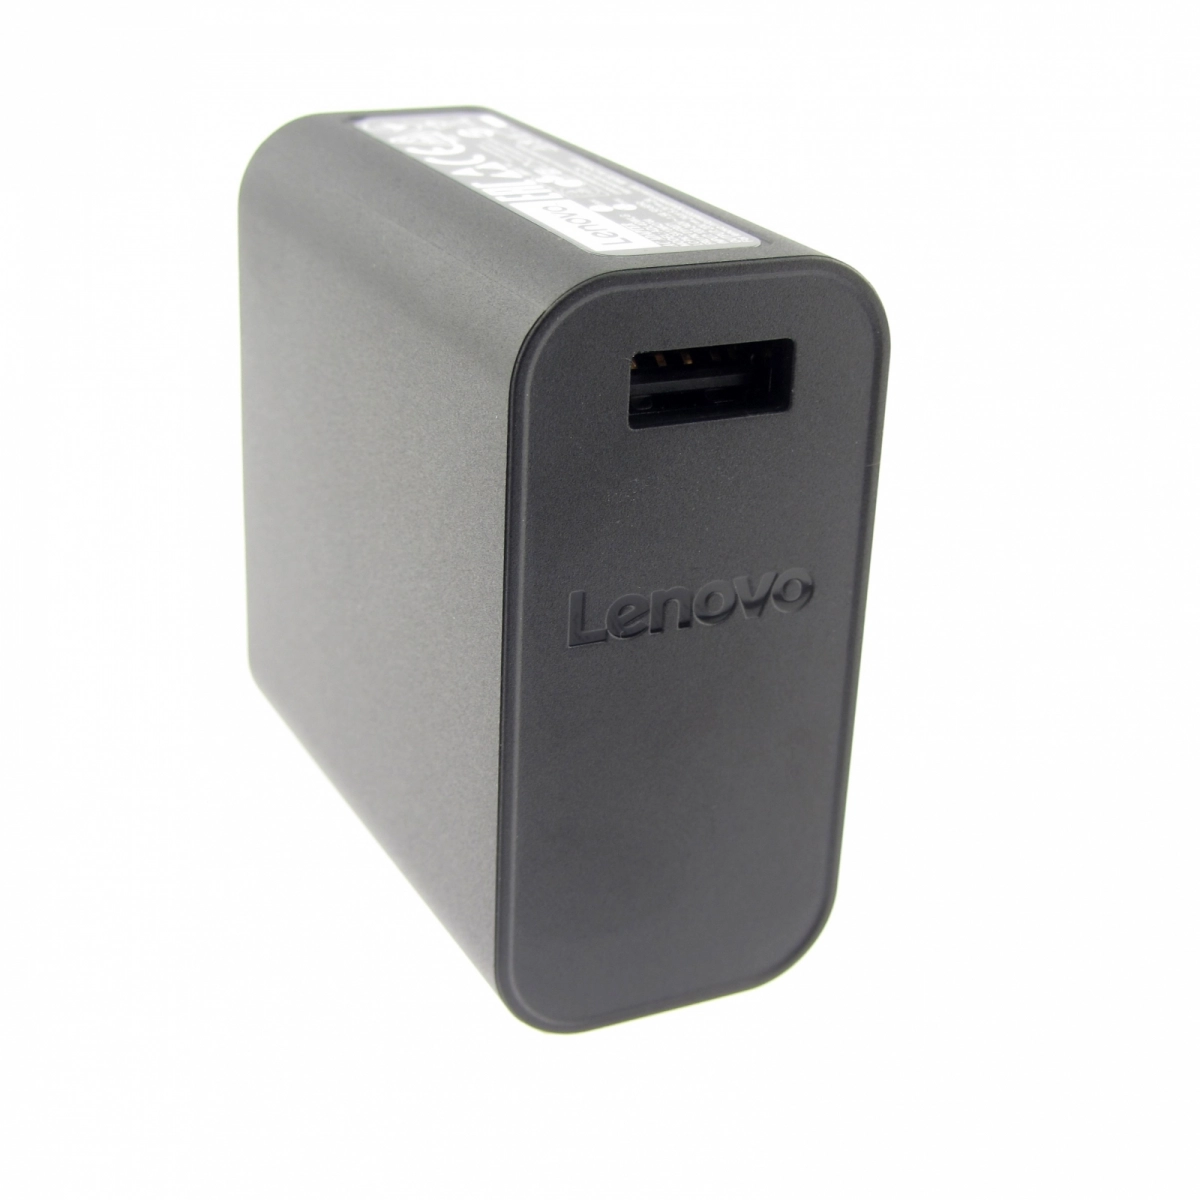 Original Netzteil für LENOVO ADL40WCC 36200581, 20V, 2A, Stecker USB, ohne USB-Kabel